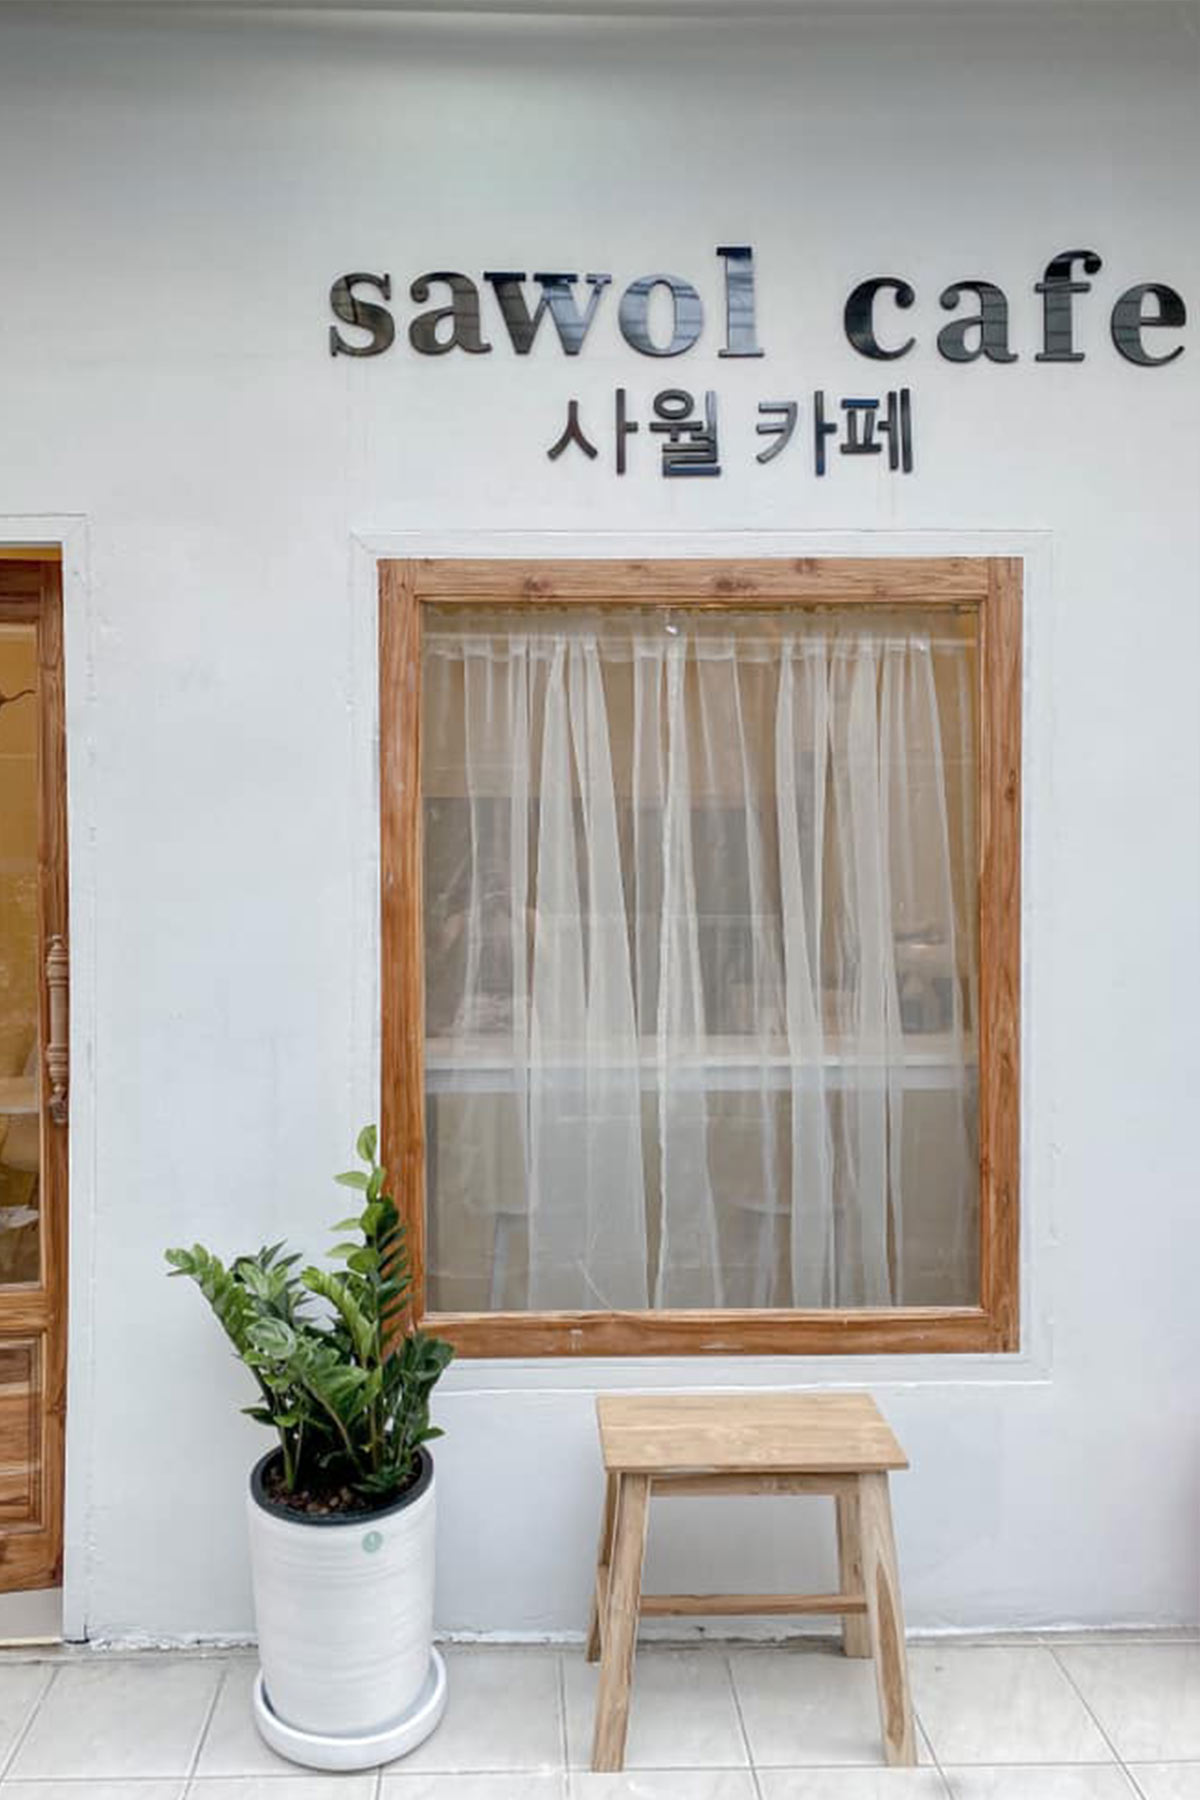 Sawol Cafe 10 คาเฟ่น่านั่งย่านจุฬา-สามย่าน